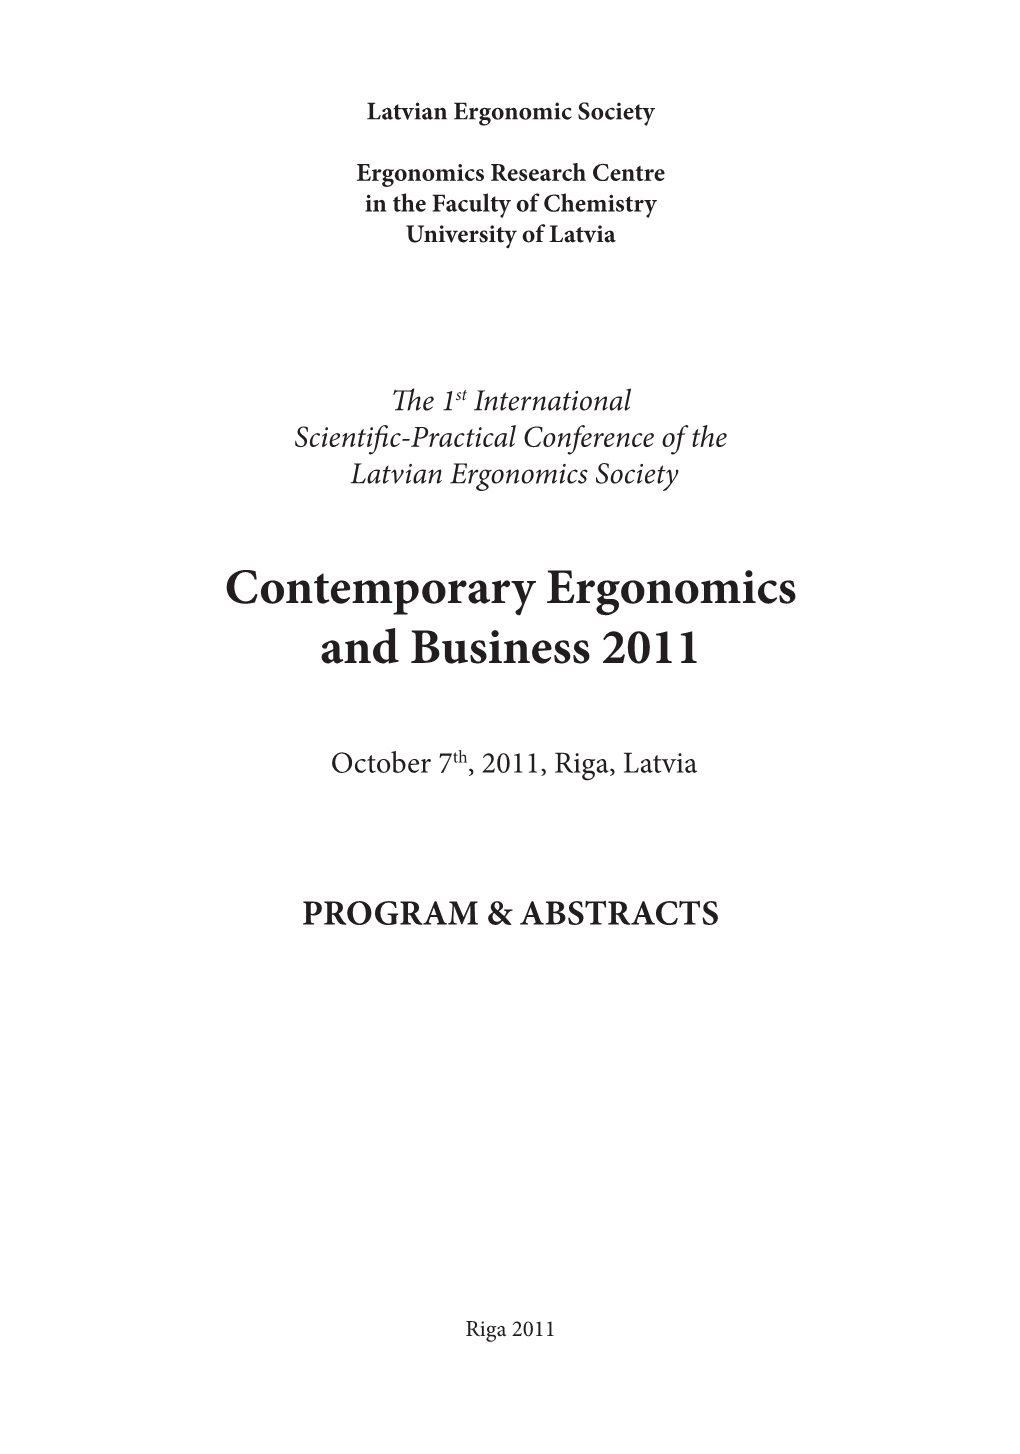 Contemporary Ergonomics and Business 2011